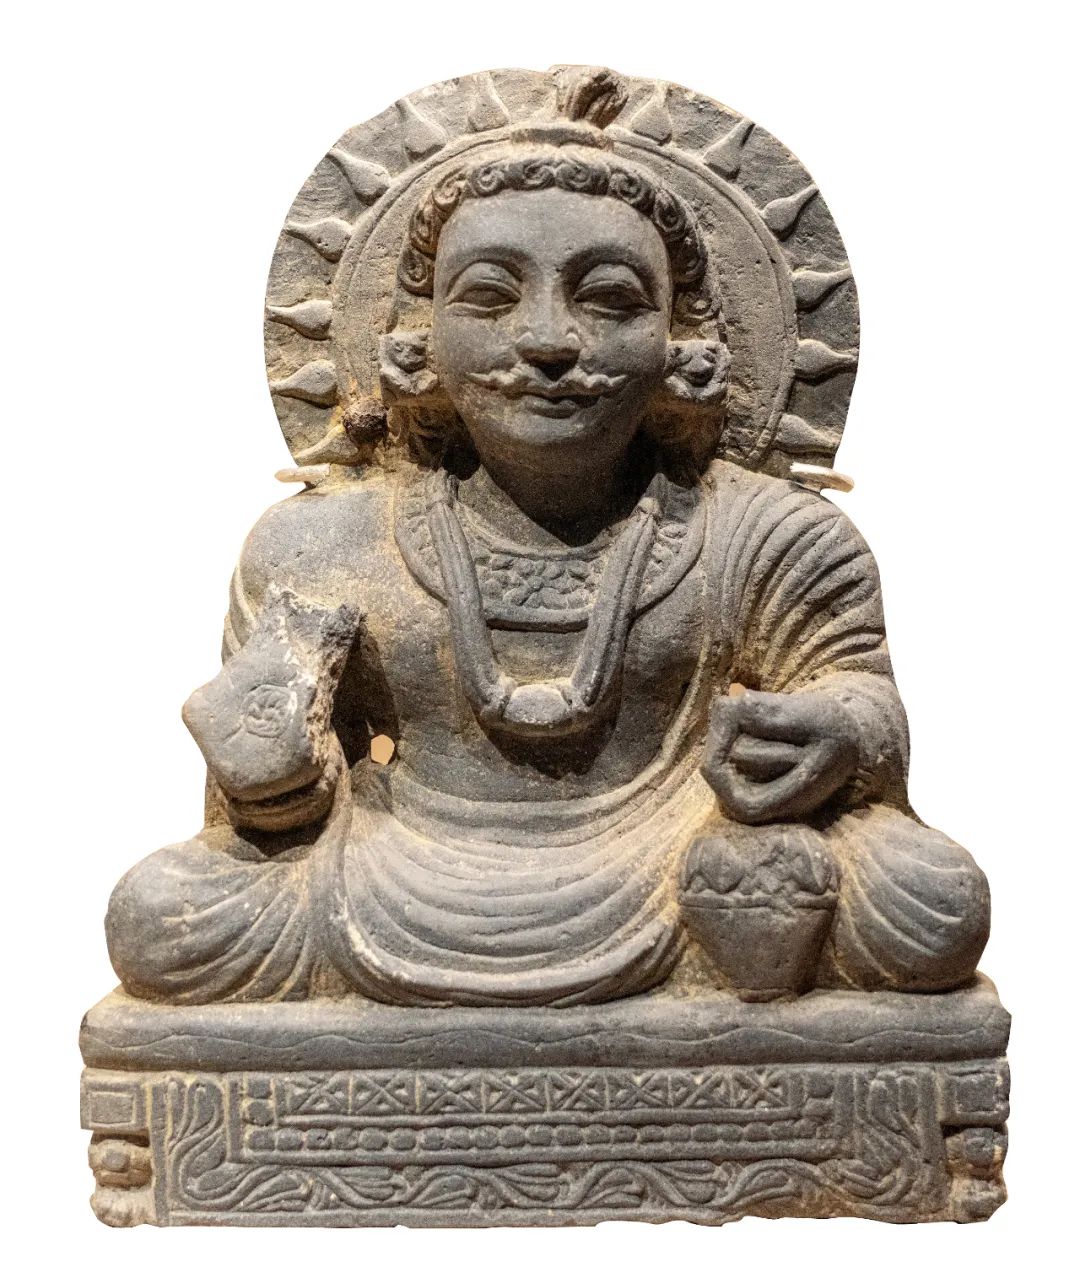 犍陀罗文化中的佛像。图/视觉中国